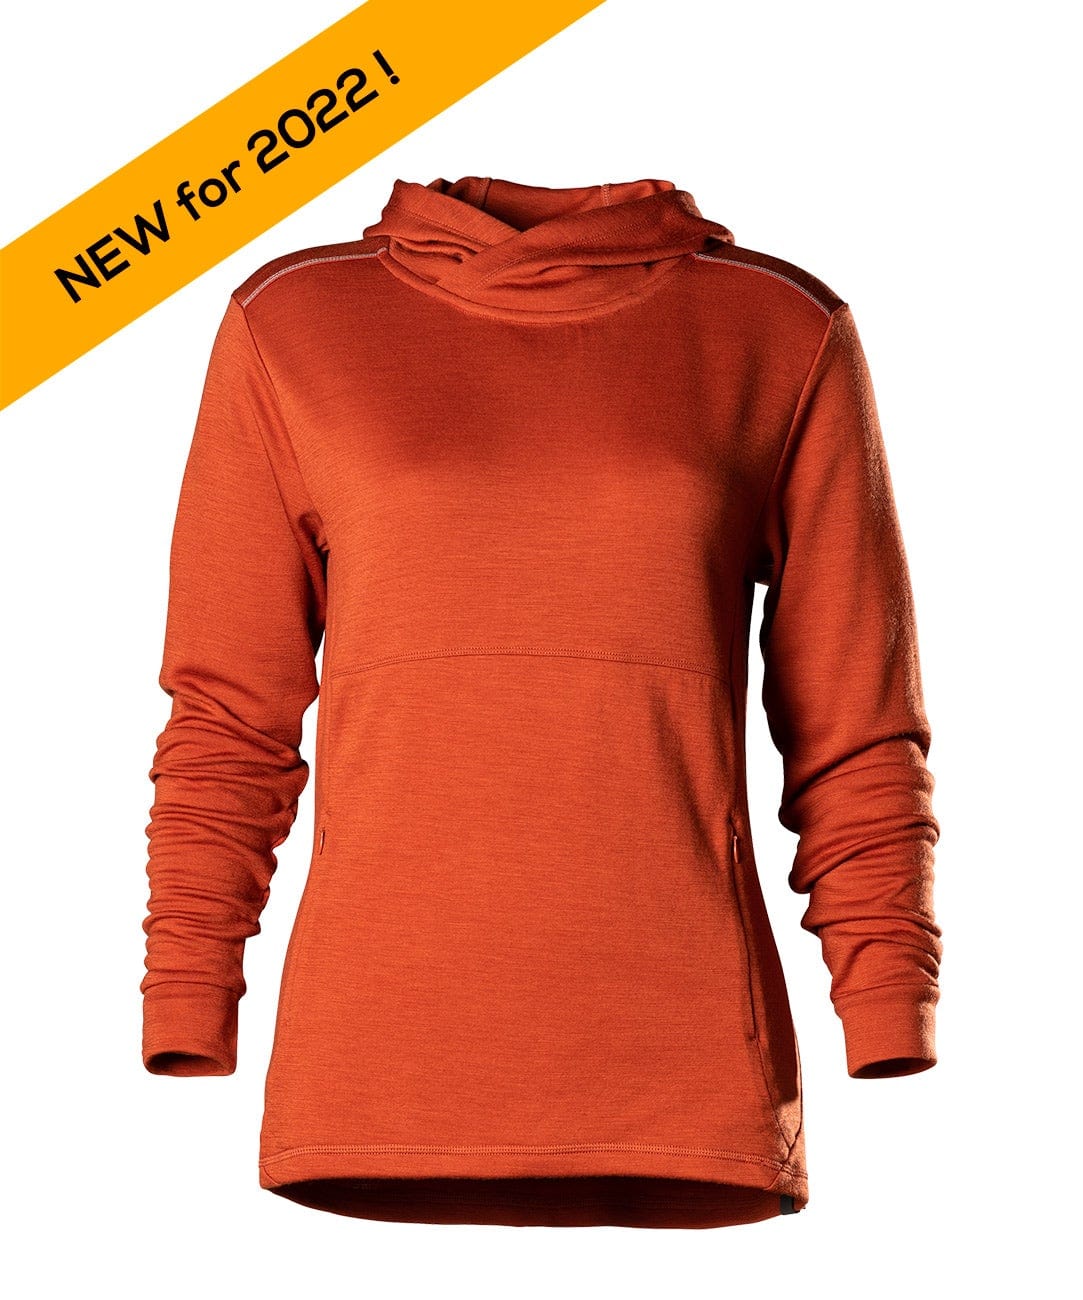 Womens Merino Wool Hooded Sweatshirt - Wool Hoodie - Free Shipping – Woolx